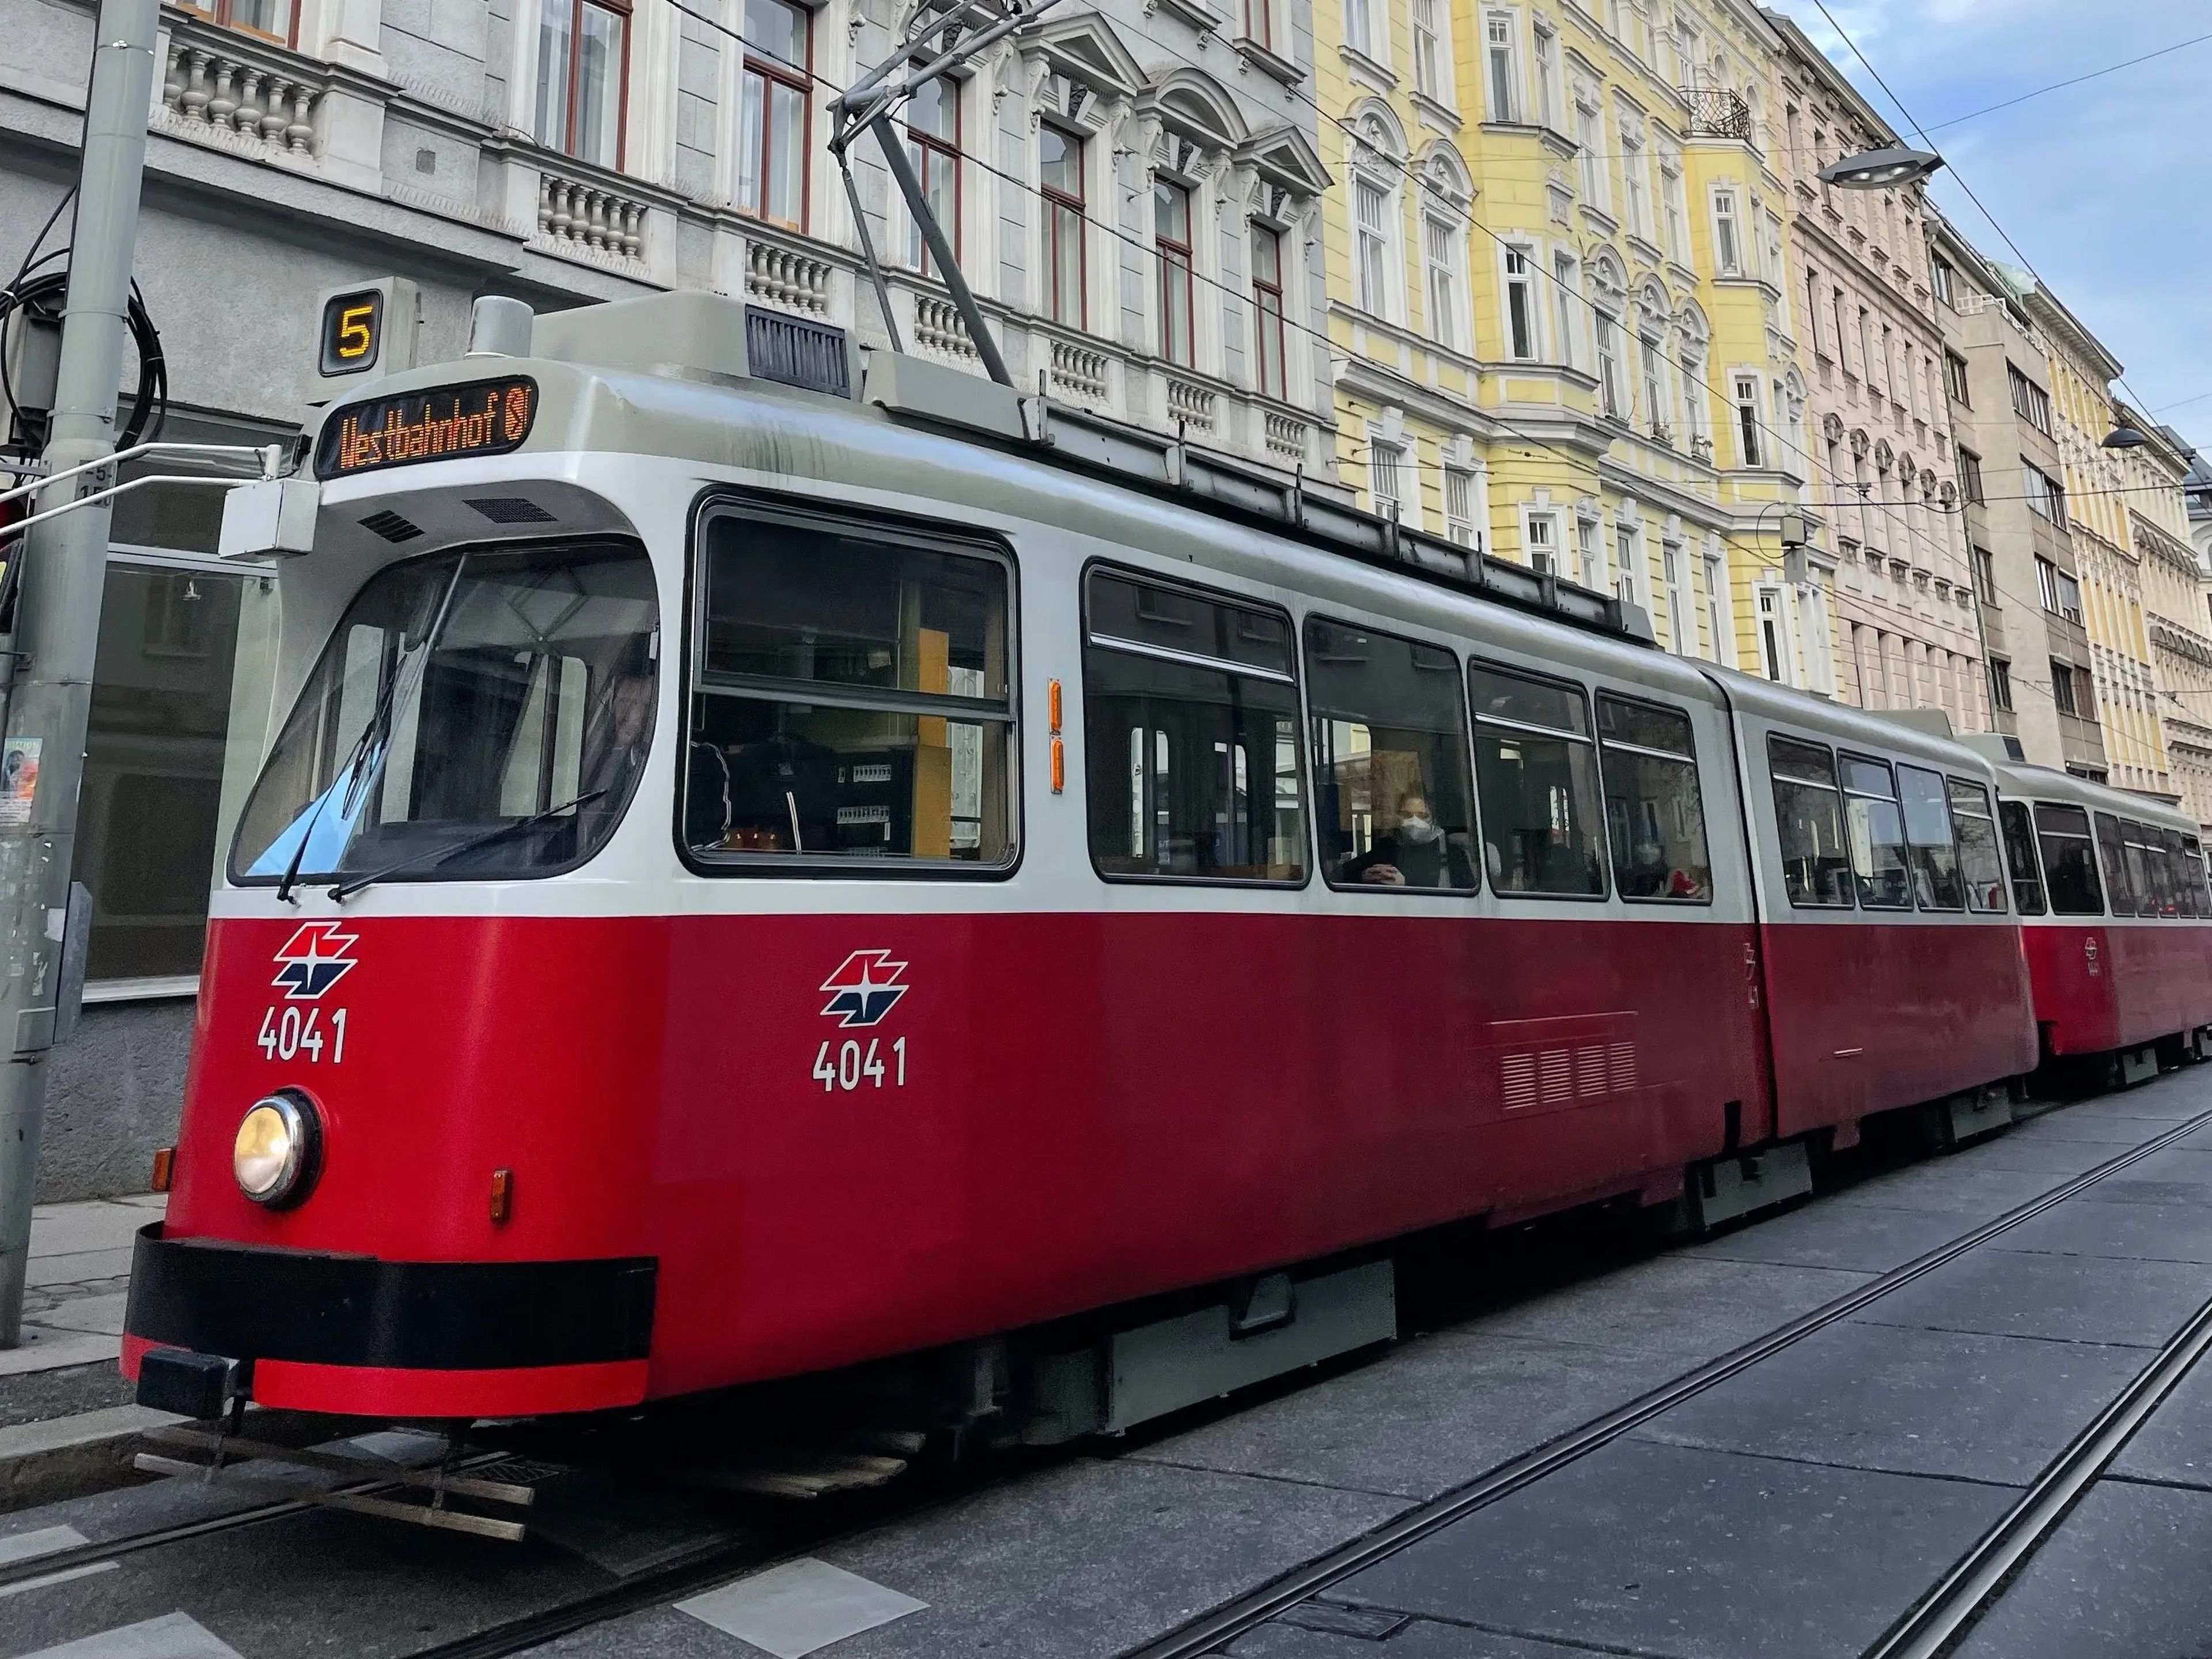 external shot of a street tram in vienna